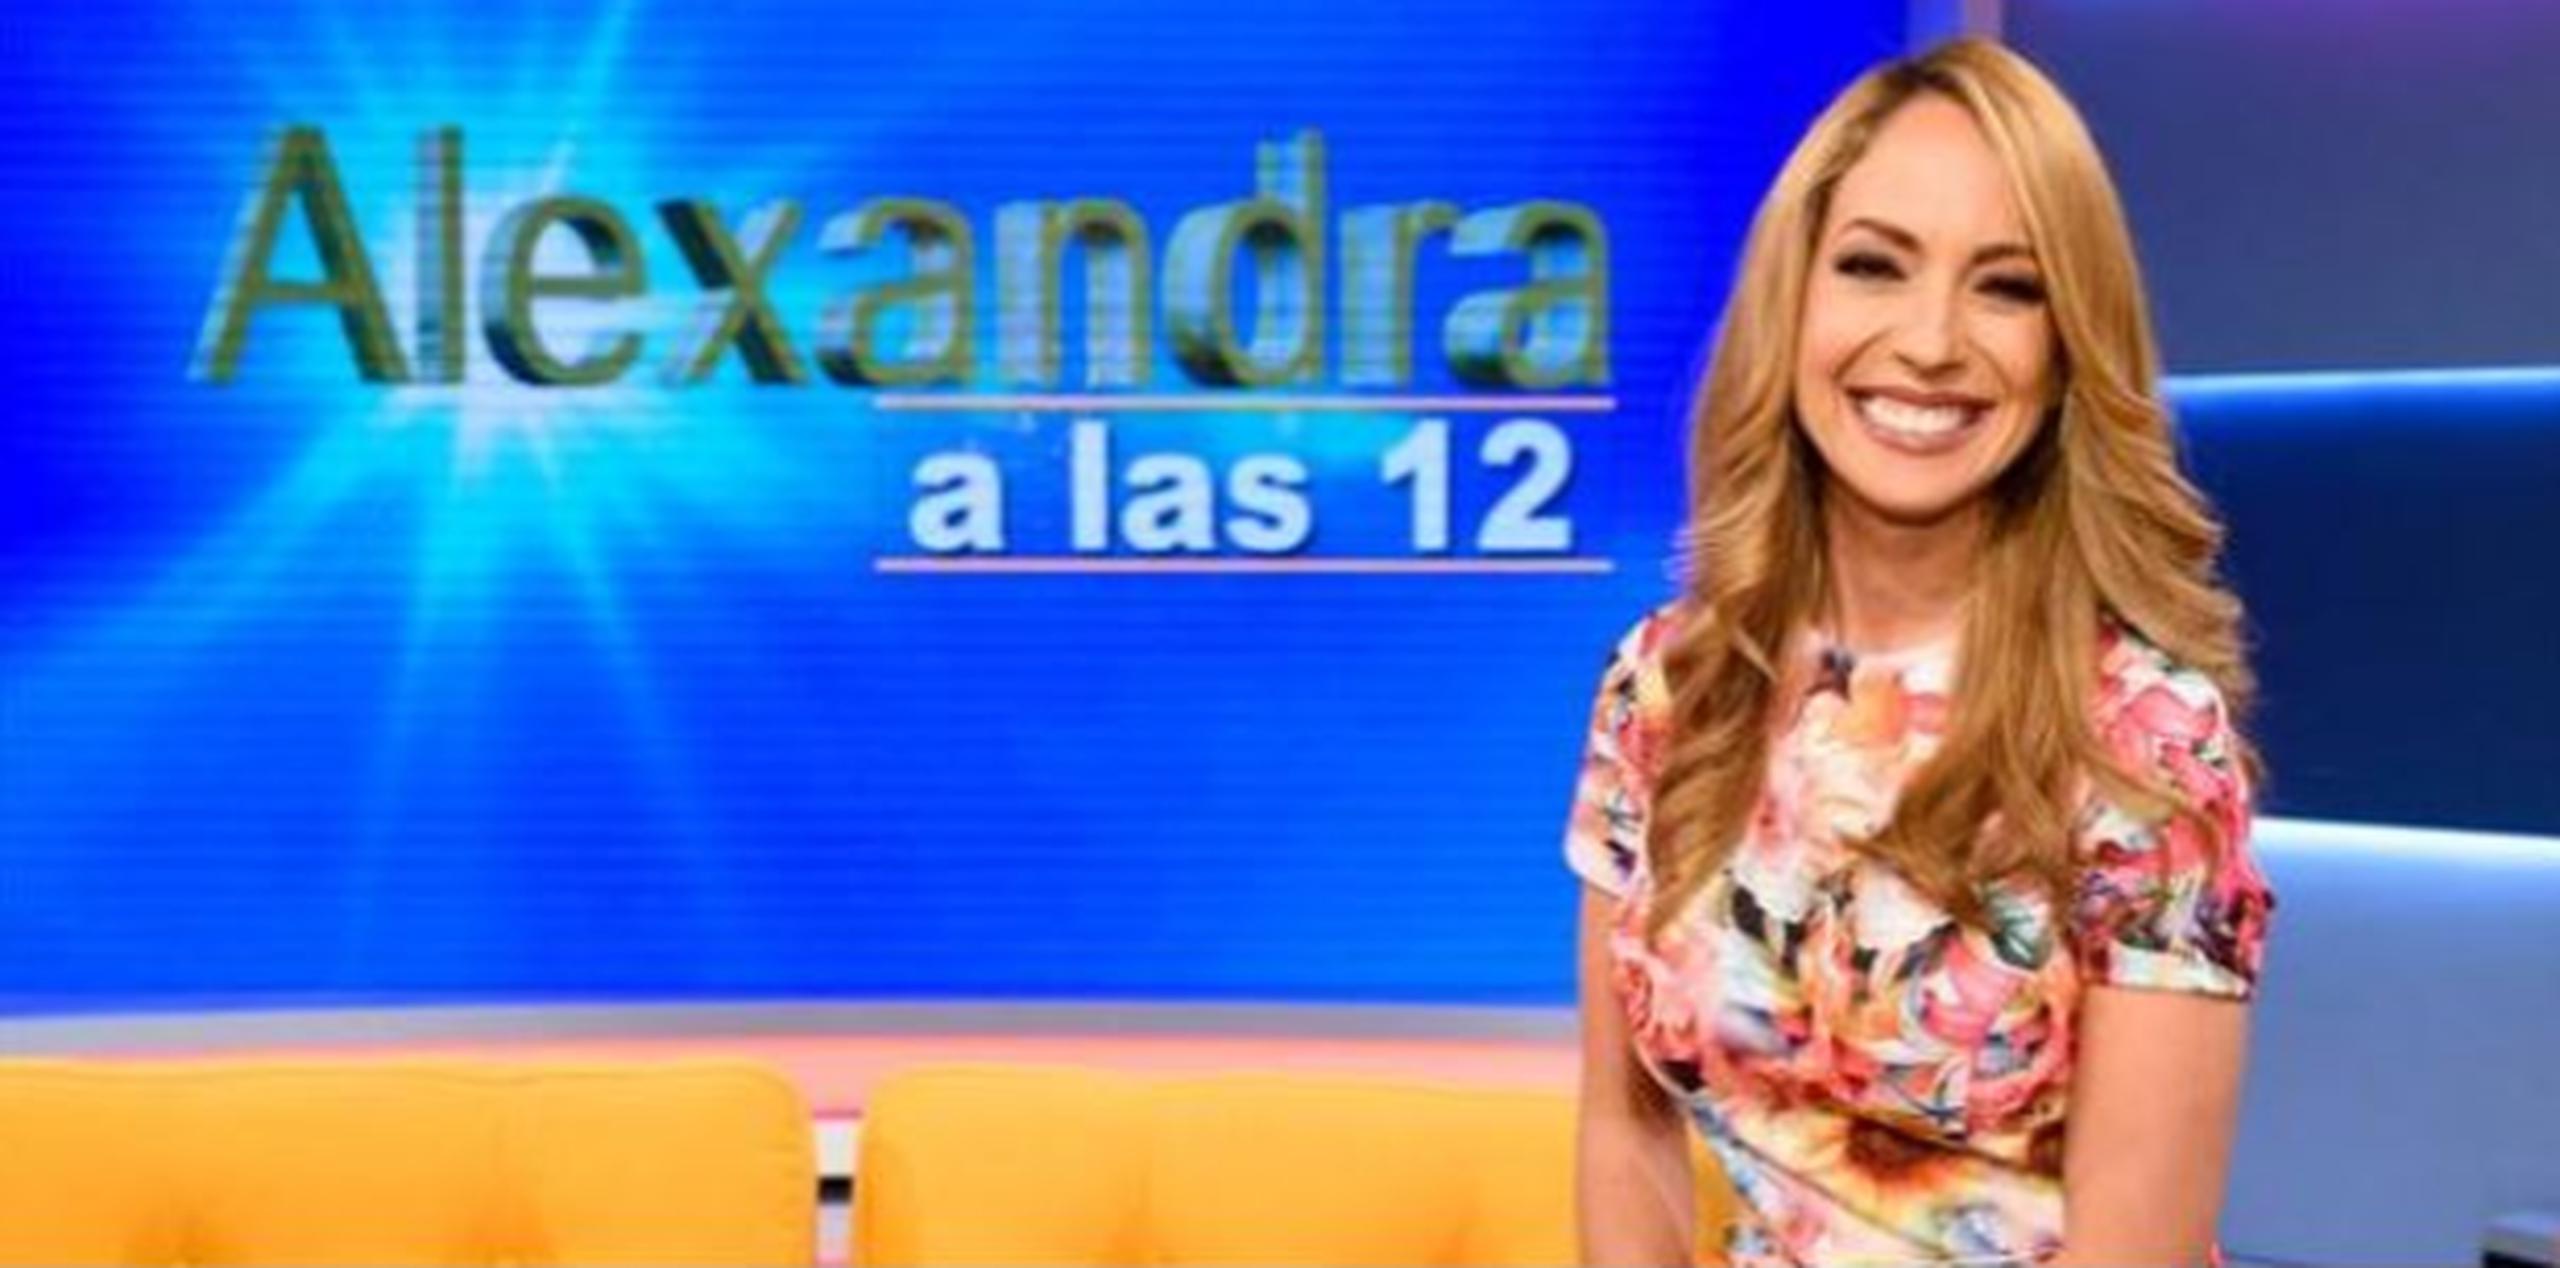 El pasado lunes, "Alexandra a las 12" debutó en el mencionado canal. (luis.alcaladelolmo@gfrmedia.com)